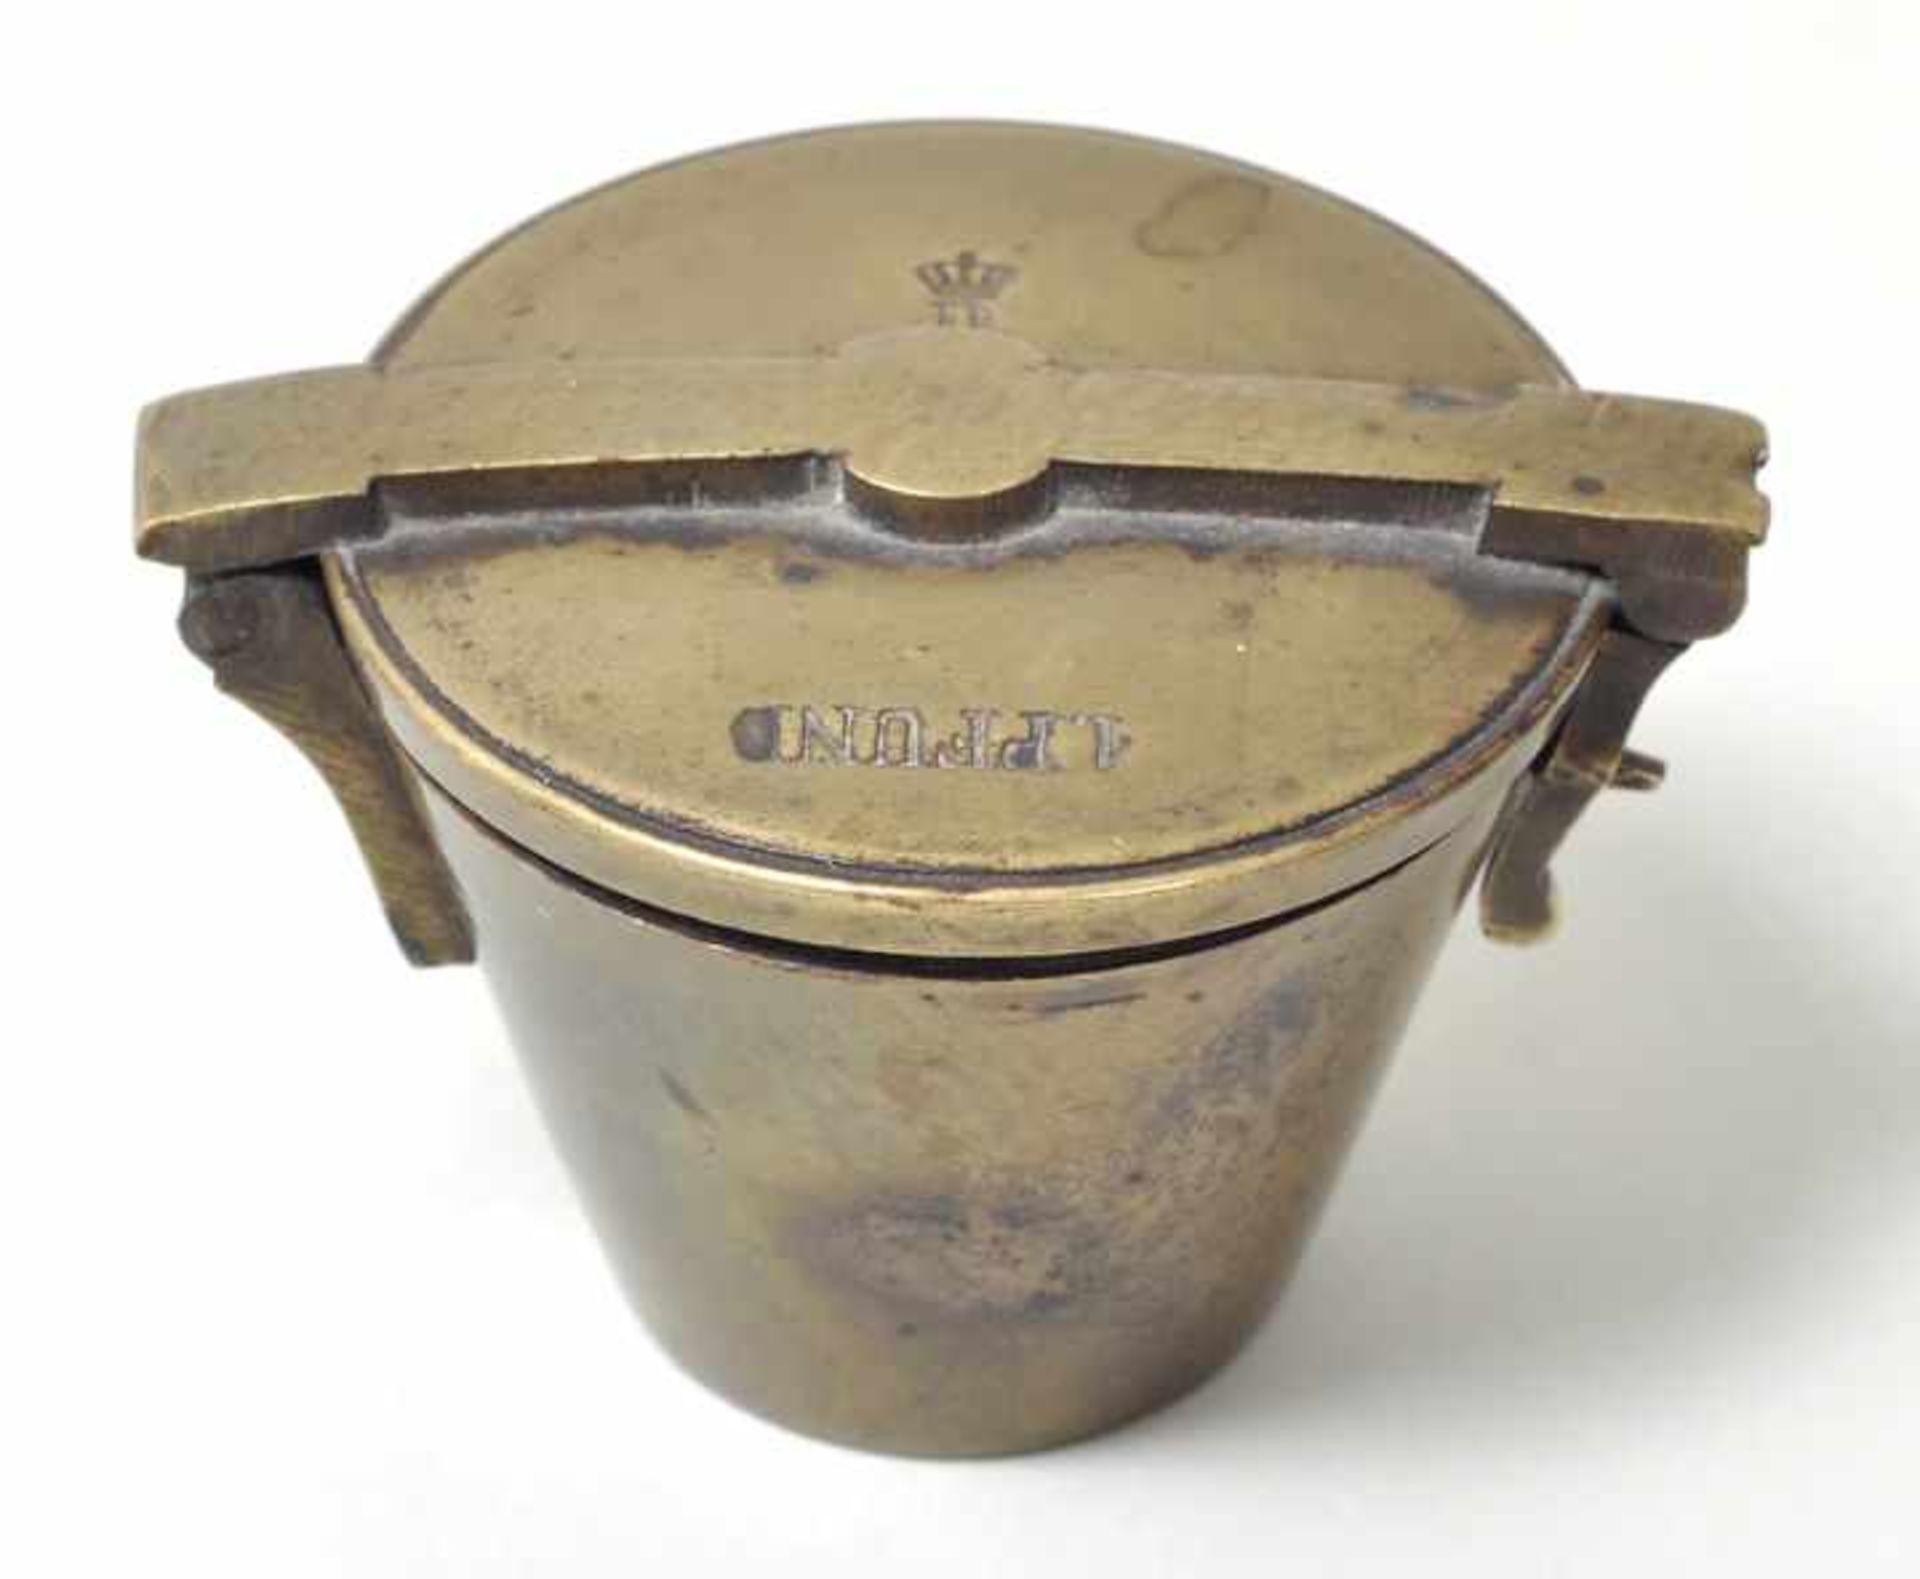 Einsatzgewicht, Nürnberg, 1. H. 19. Jh. Zu 1 Pfund. Messing/ Bronze, gegossen, gedreht. Konusform